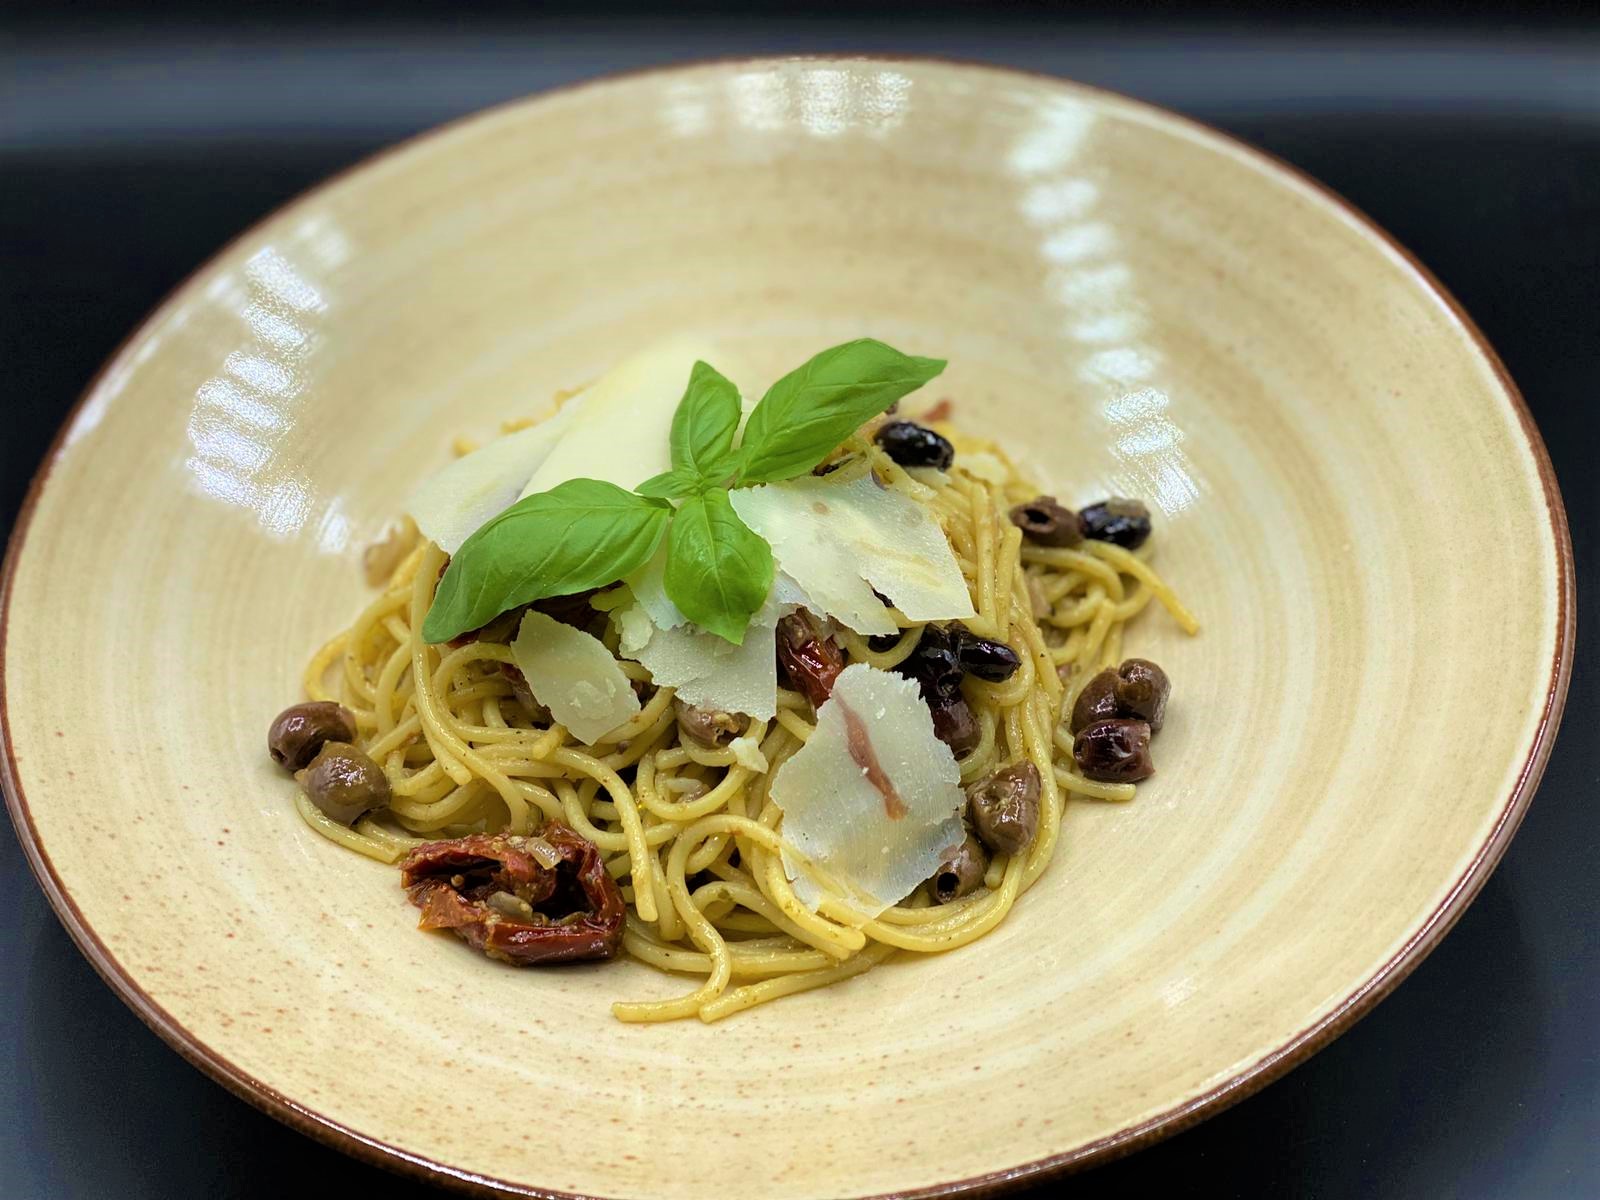 Spaghetti mit Tagliasce Oliven und Pesto Genovese